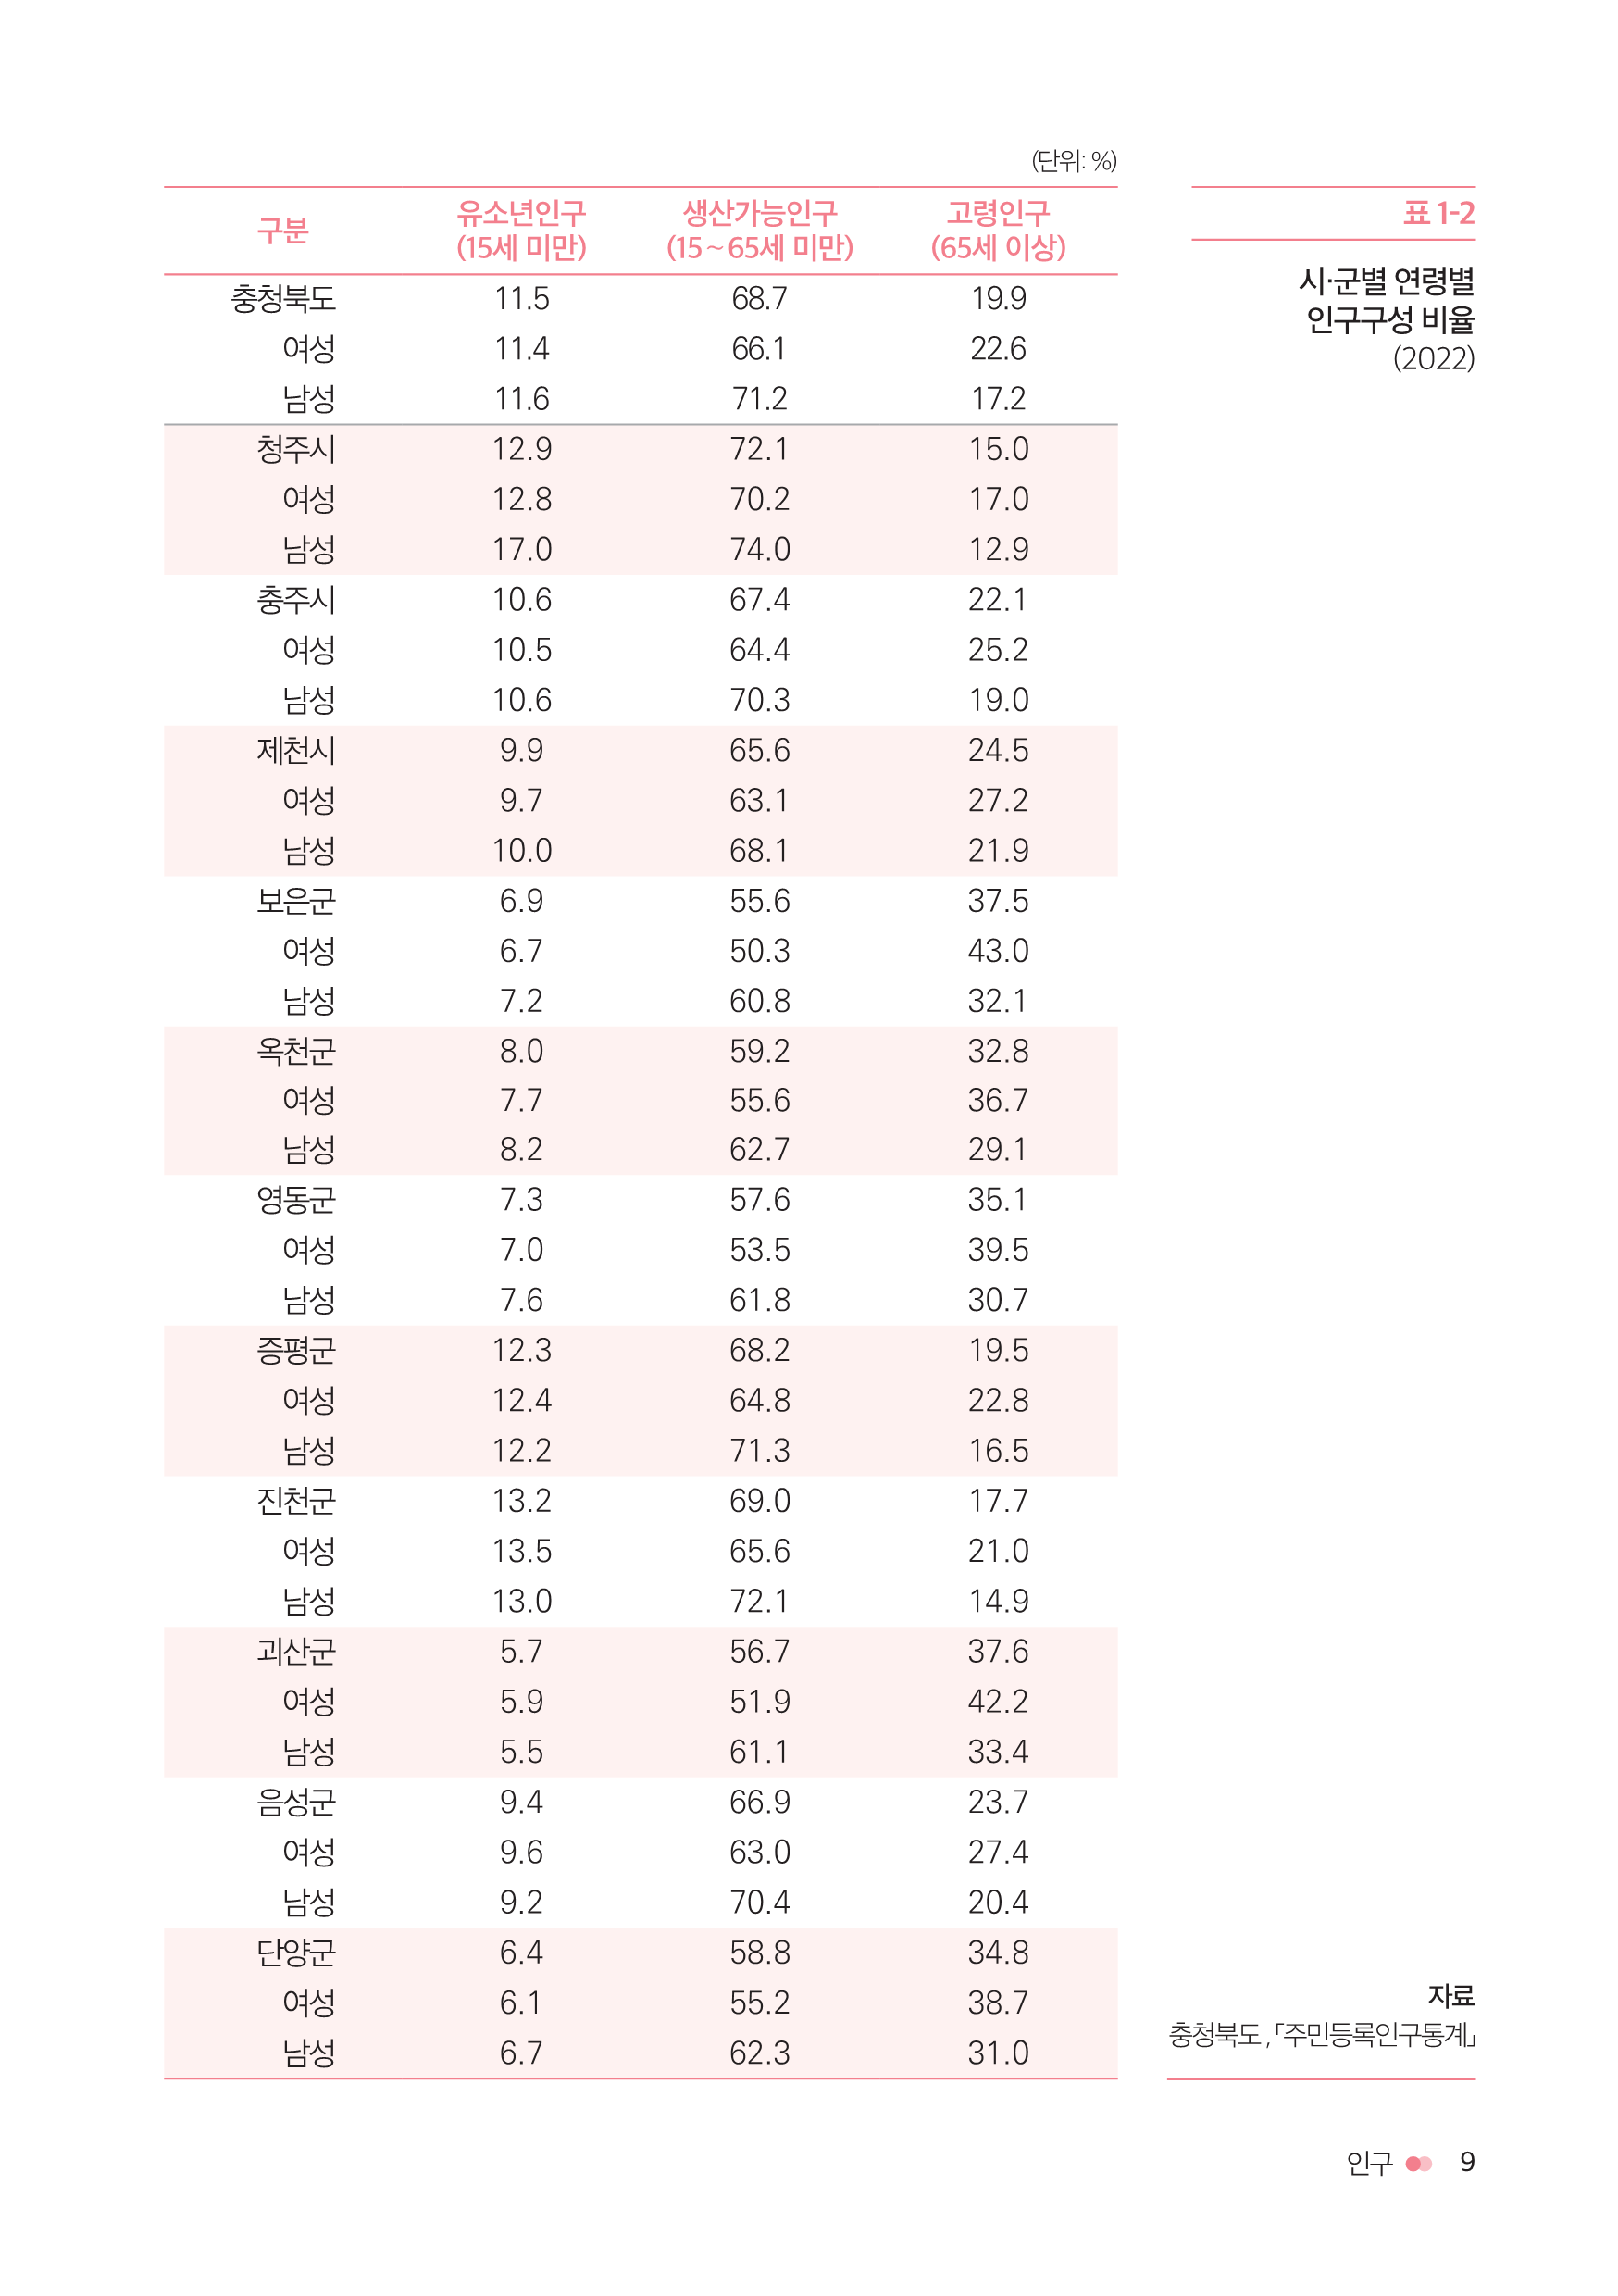 충북여성재단-성인지통계(인포)_웹용_11.png